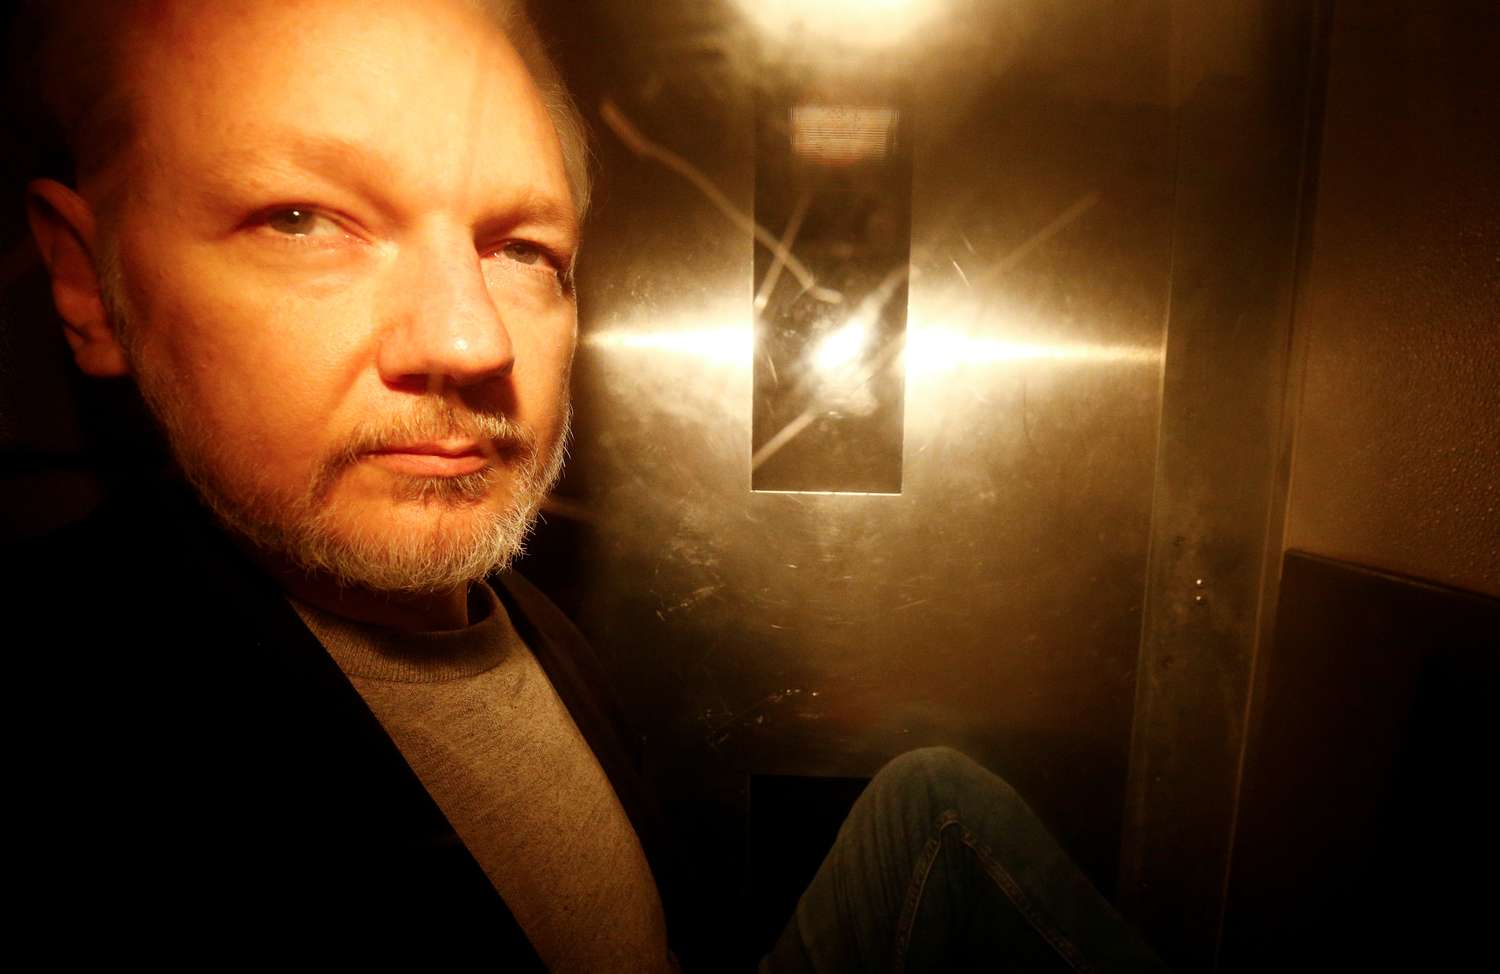 Suecia solicita la detención de Assange, al tiempo que WikiLeaks acusa a Estados Unidos de confiscar ilegalmente sus pertenencias